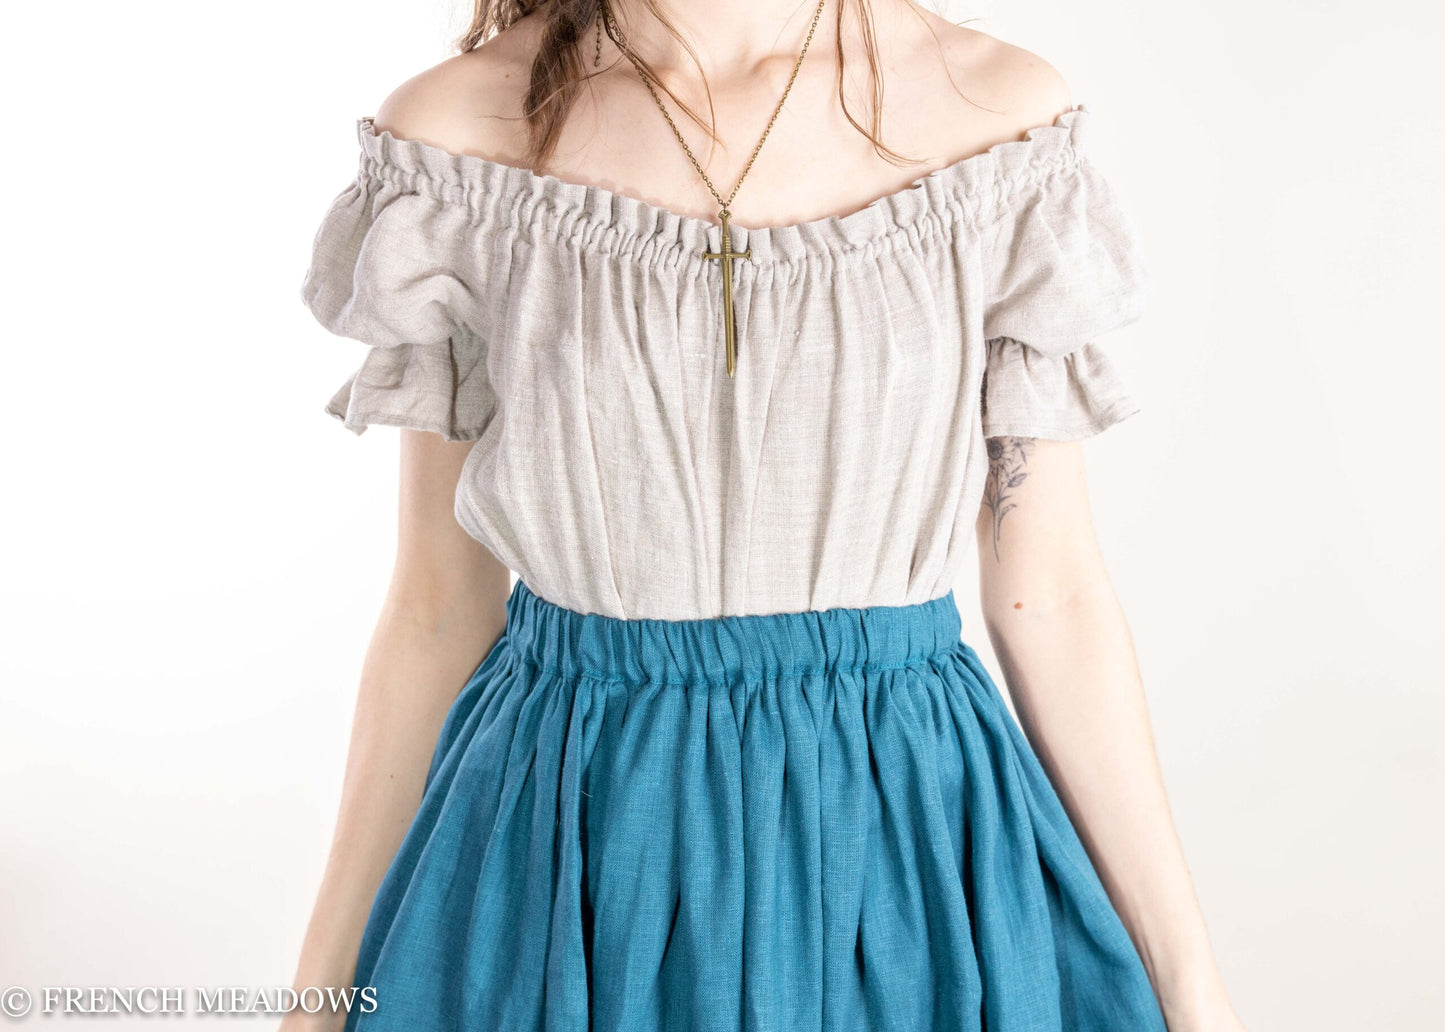 Teal Linen Renaissance Skirt